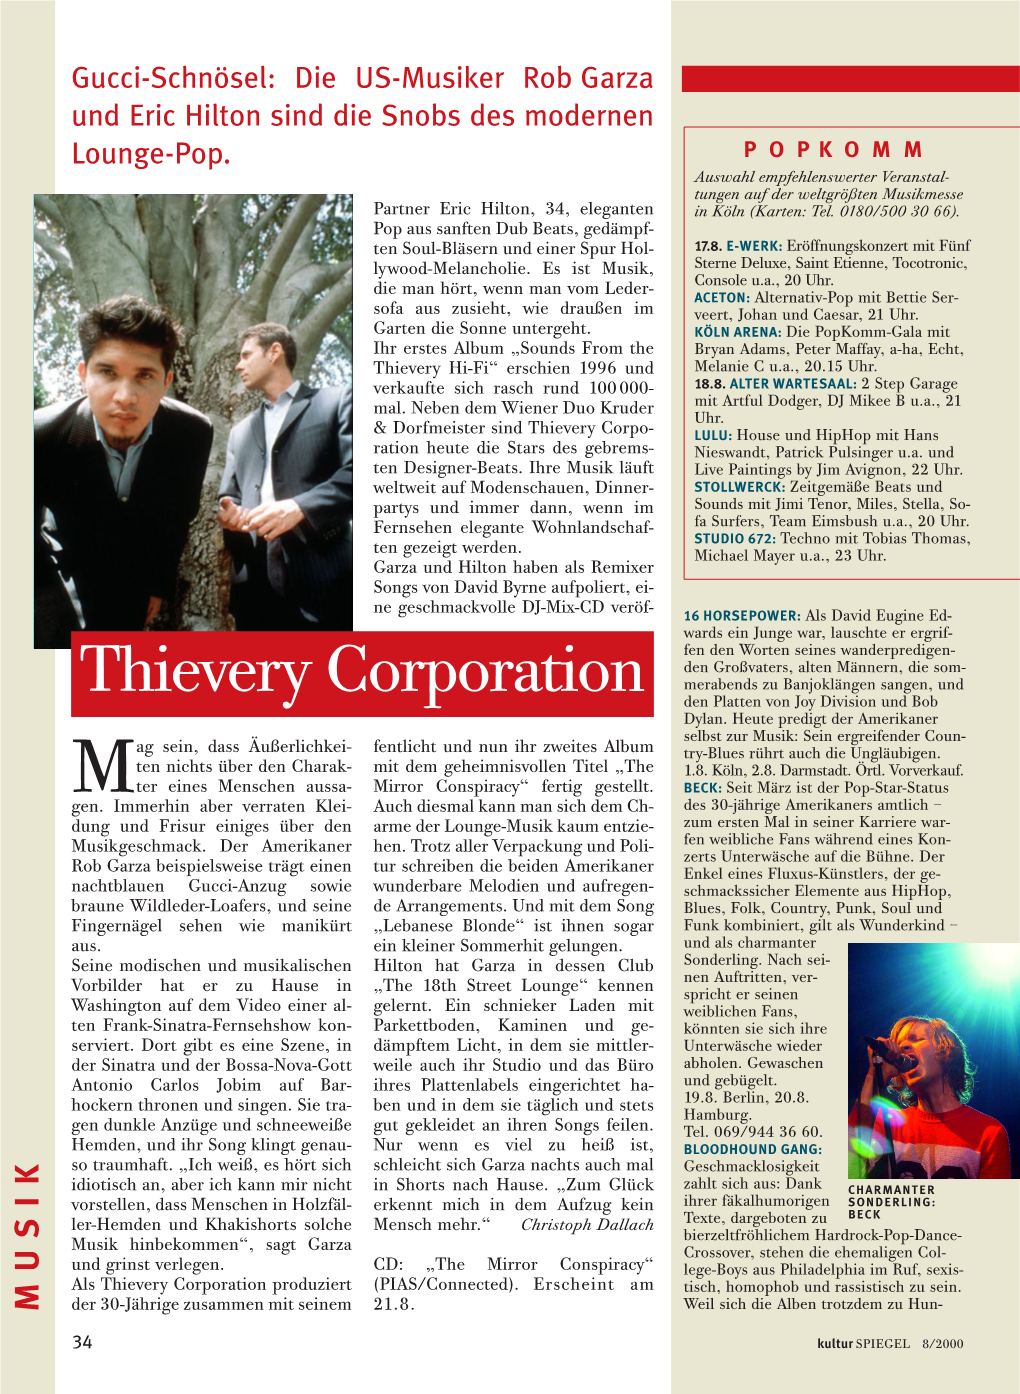 Thievery Corporation Merabends Zu Banjoklängen Sangen, Und Den Platten Von Joy Division Und Bob Dylan